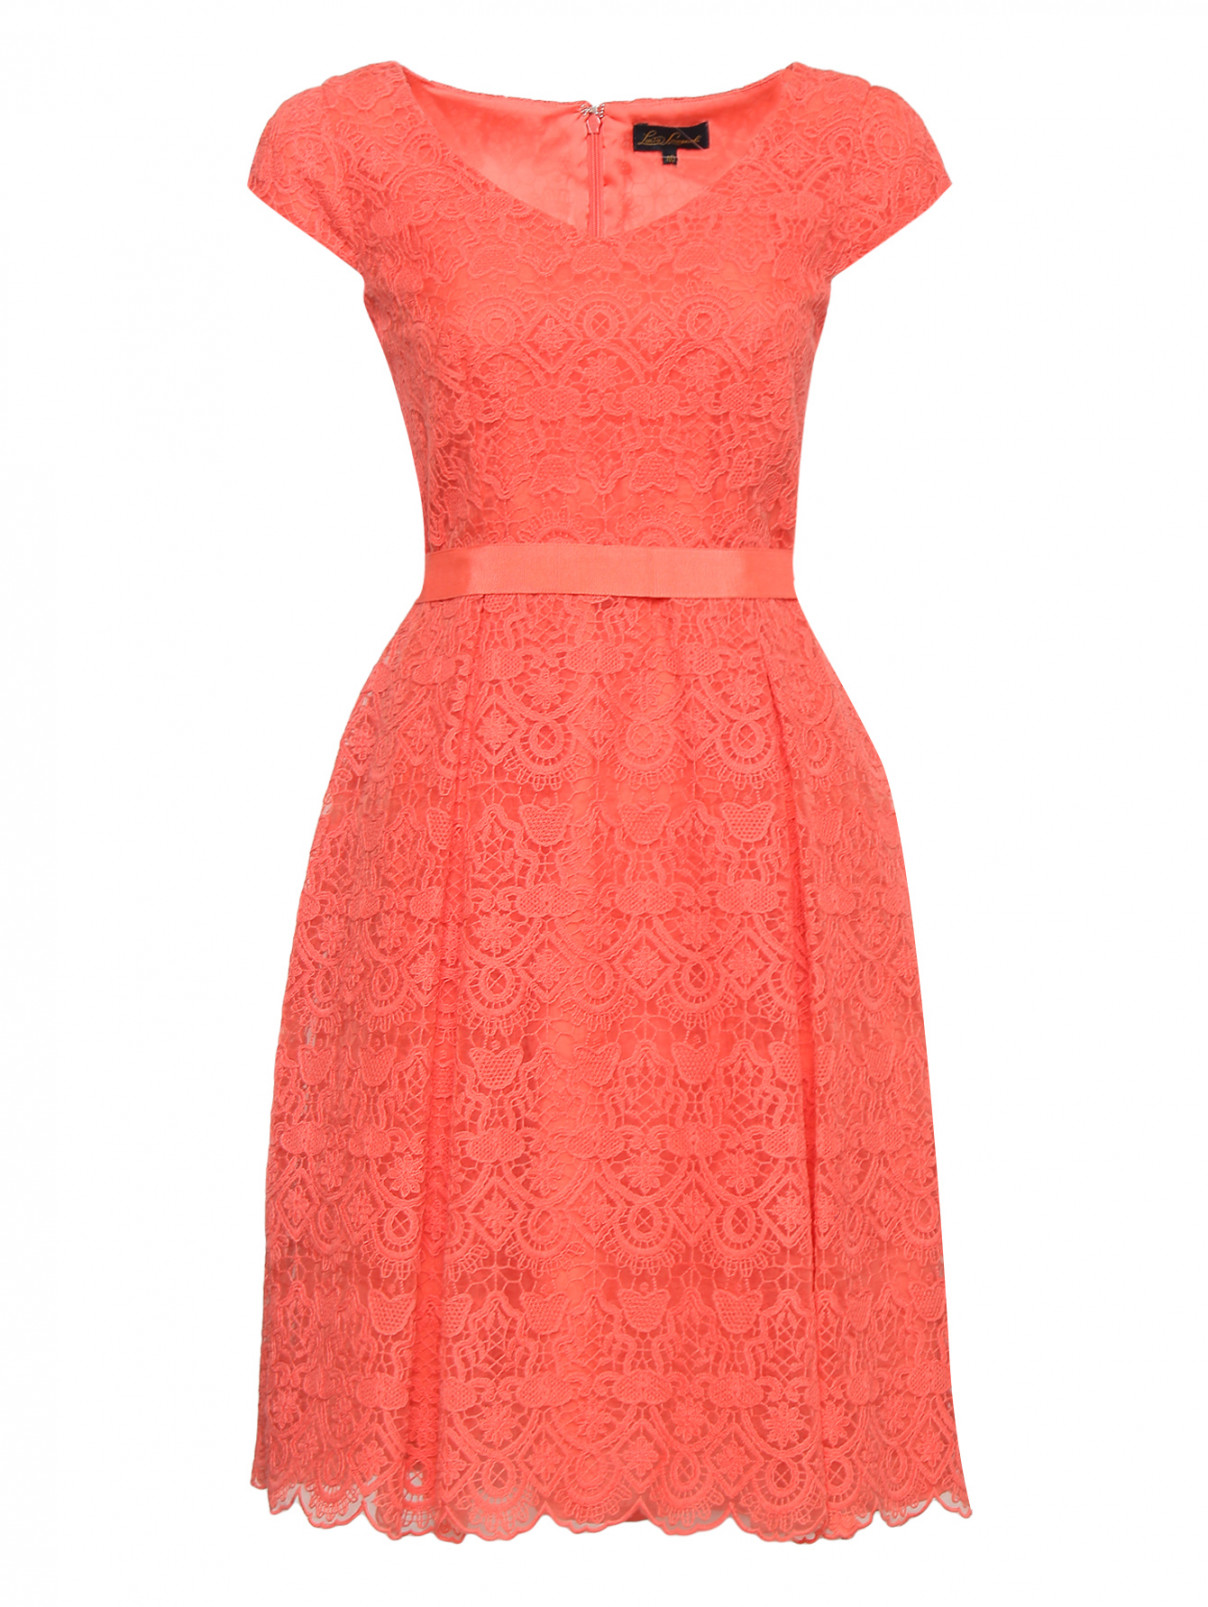 Платье с кружевной отделкой и поясом Luisa Spagnoli  –  Общий вид  – Цвет:  Красный